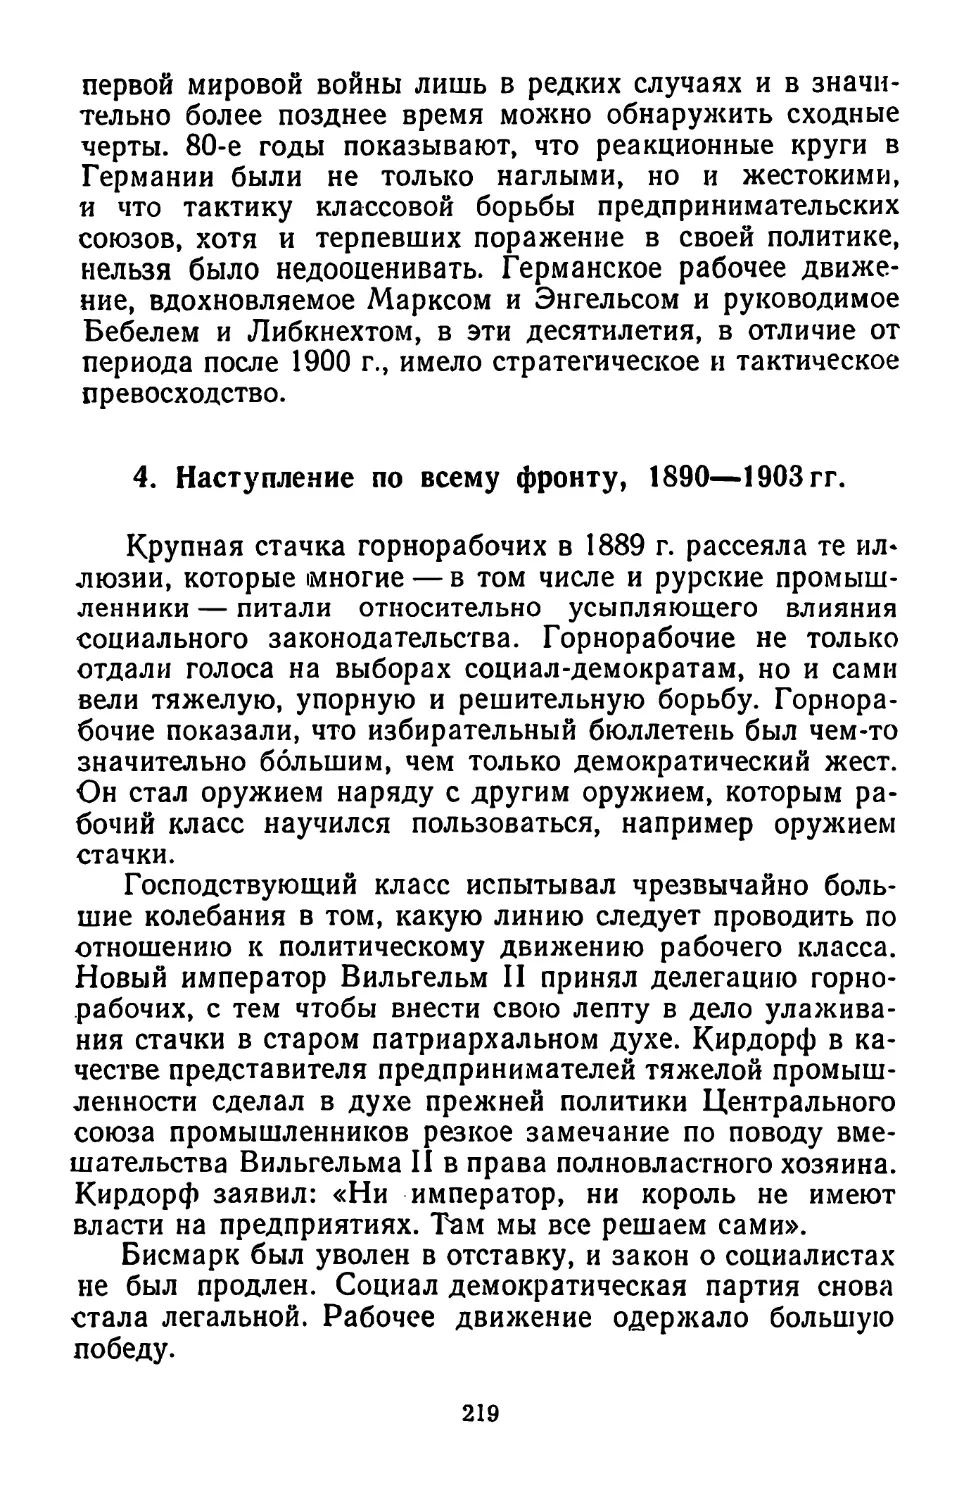 4. Наступление по всему фронту, 1890—1903 гг